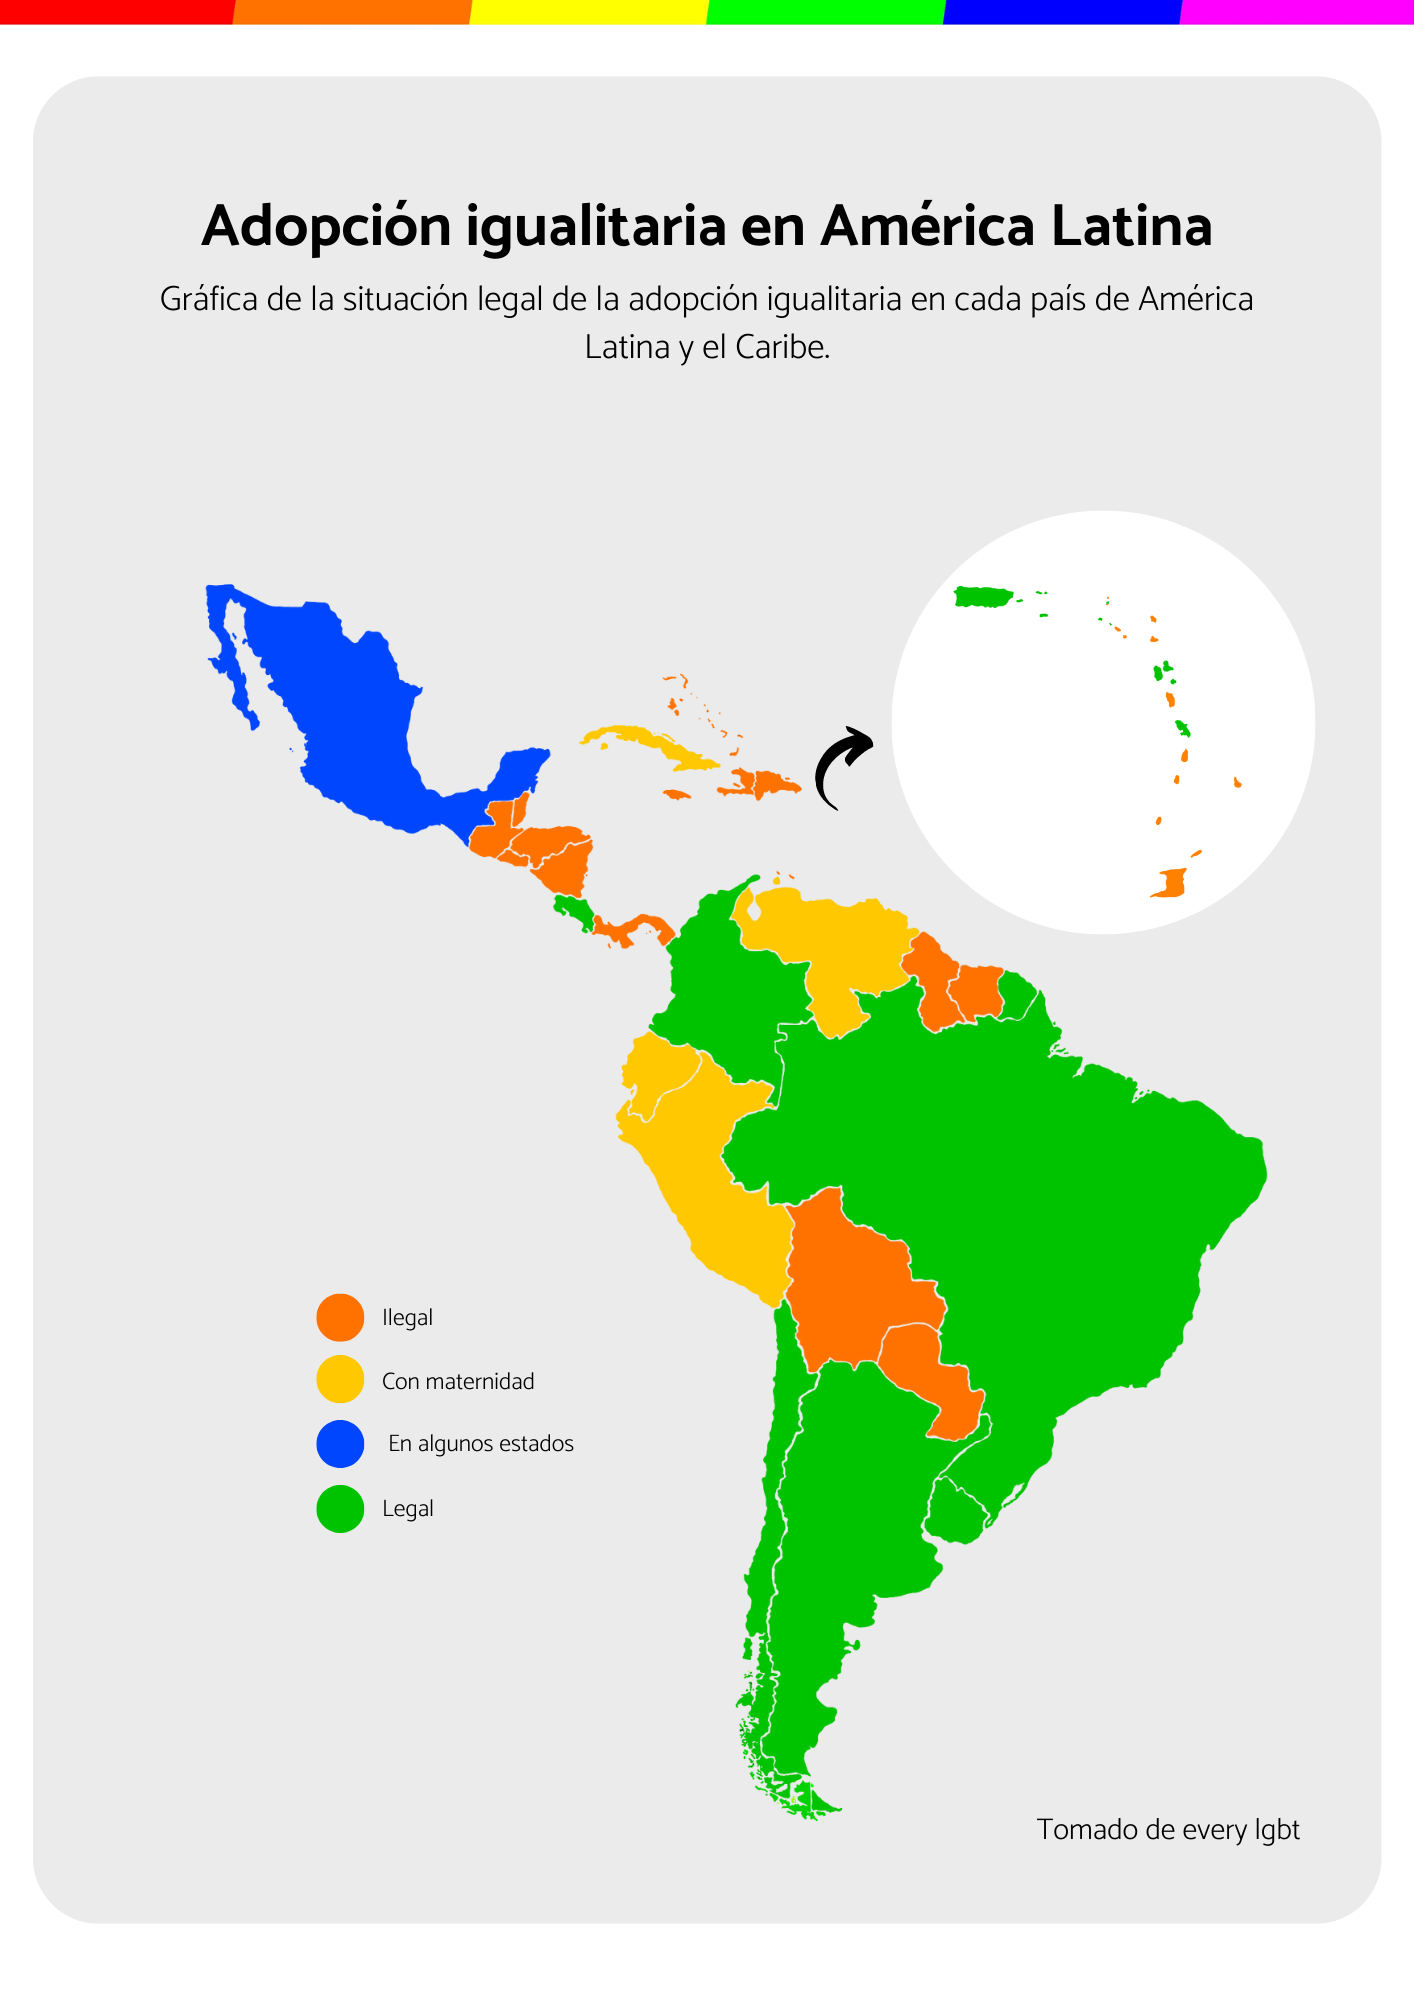 Adopción igualitaria en América Latina y El Caribe